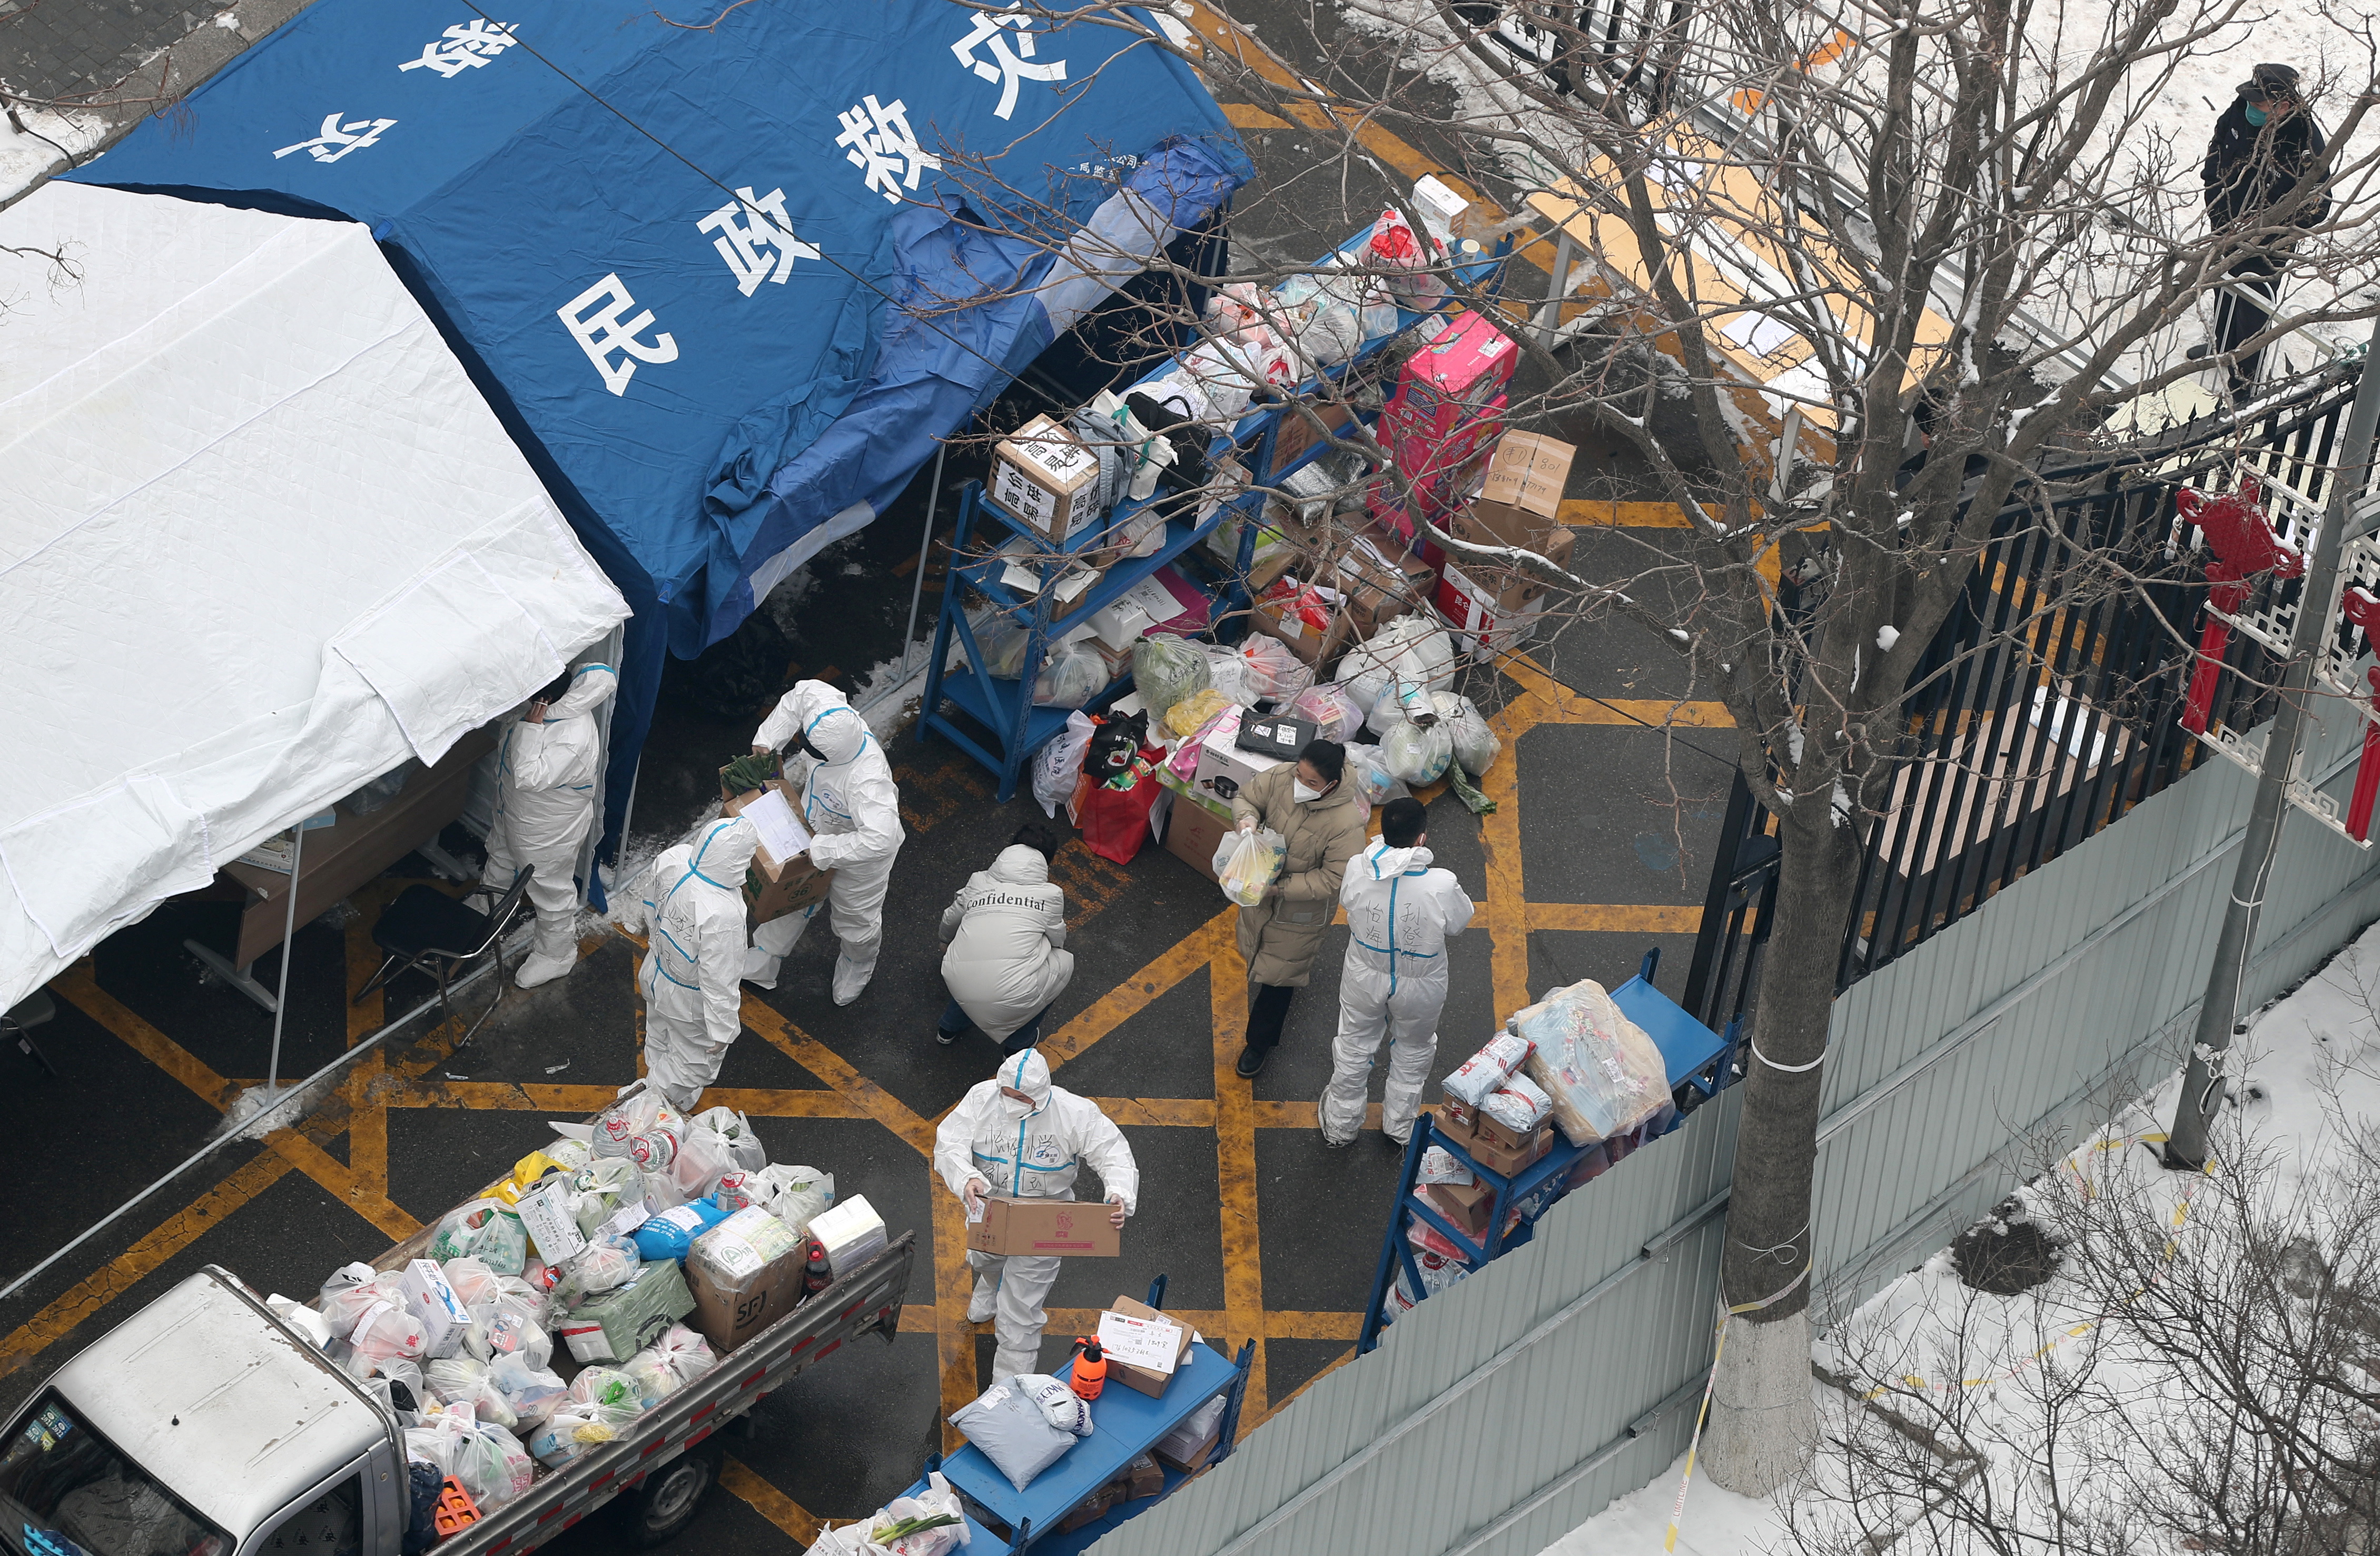 Trabajadores con trajes protectores clasifican los suministros que se entregarán a los residentes en un complejo cerrado luego de casos de la enfermedad coronavirus (COVID-19), en el distrito de Fengtai de Beijing, China, el 23 de enero de 2022. Foto tomada el 23 de enero de 2022. cnsphoto vía REUTERS